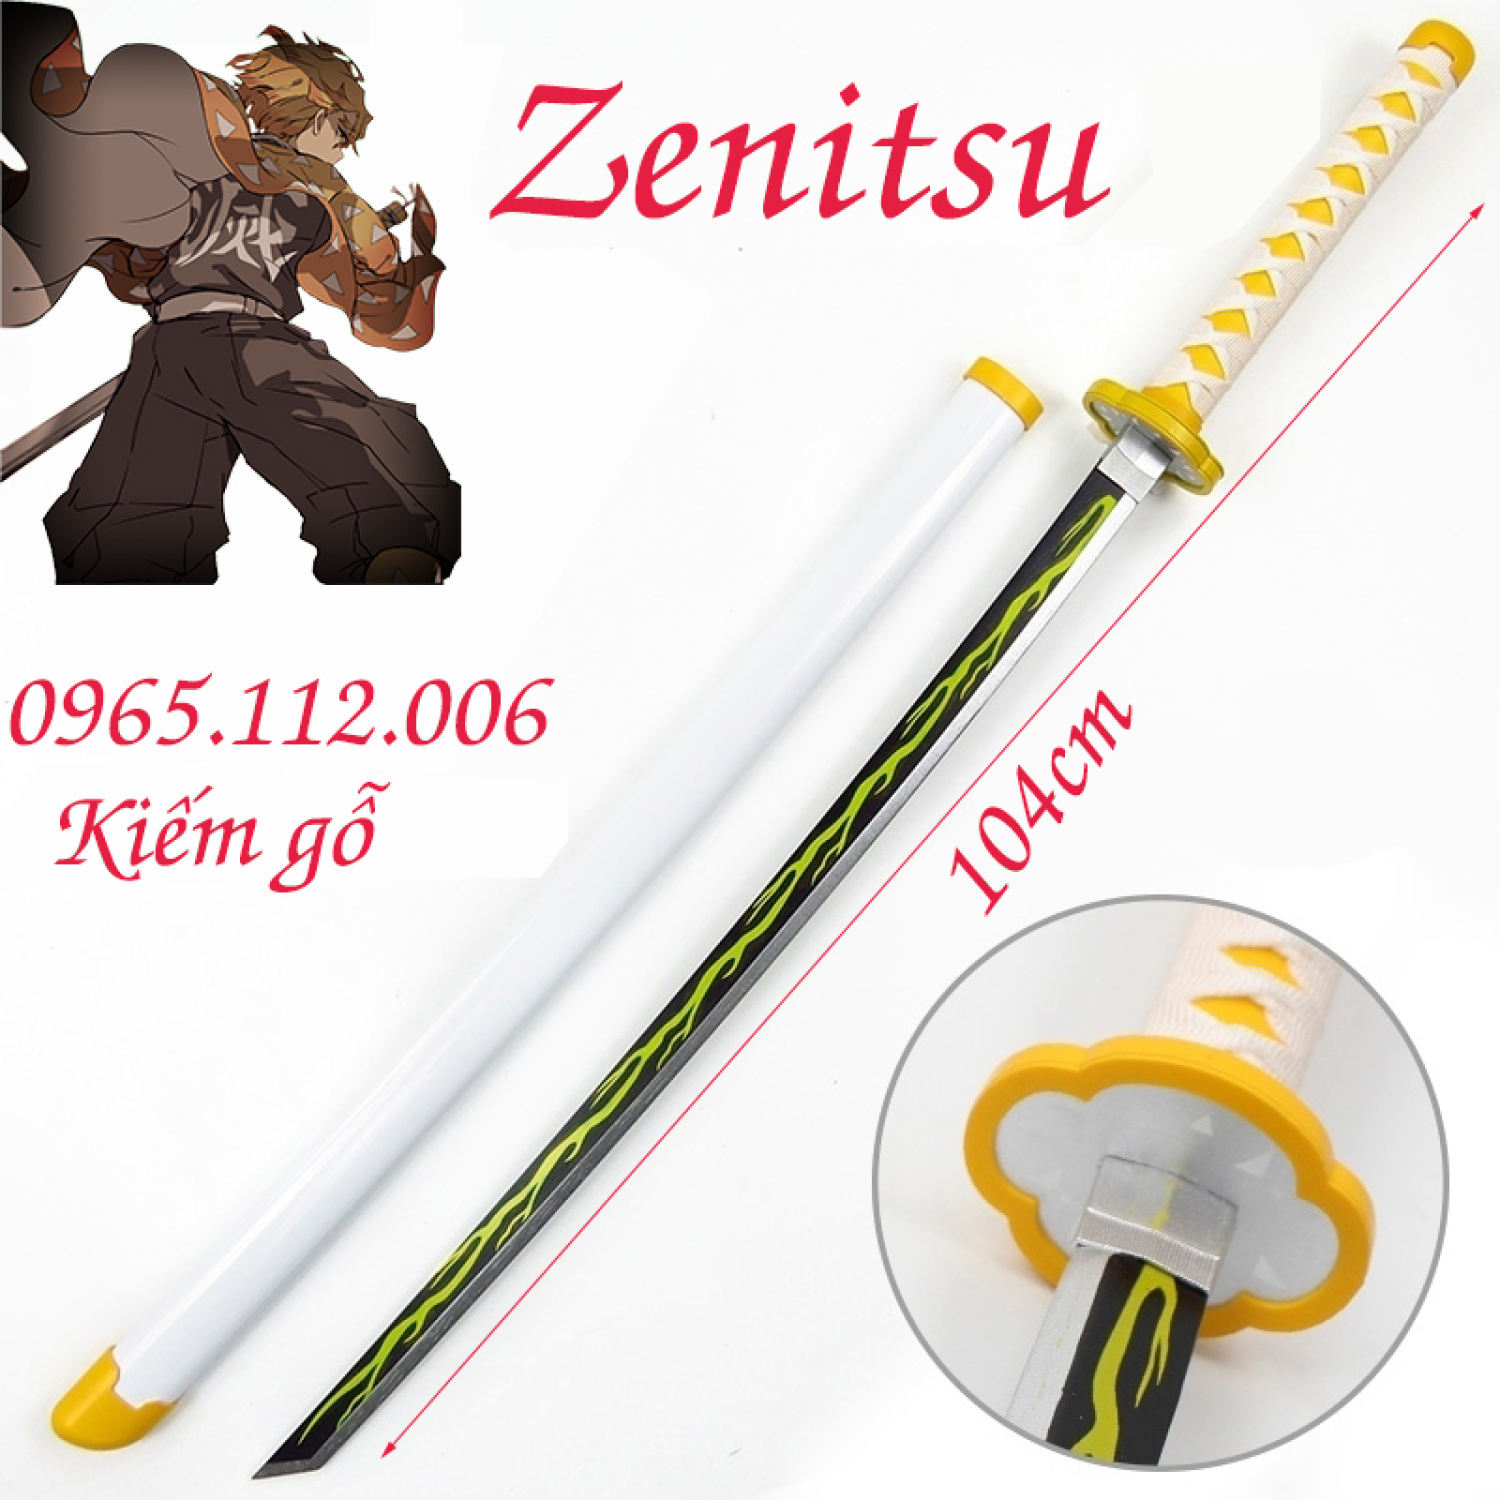 Kiếm gỗ Cosplay nhân vật Zenitsu trong Kimetsu no Yaiba bằng GỖ dài 1m Có